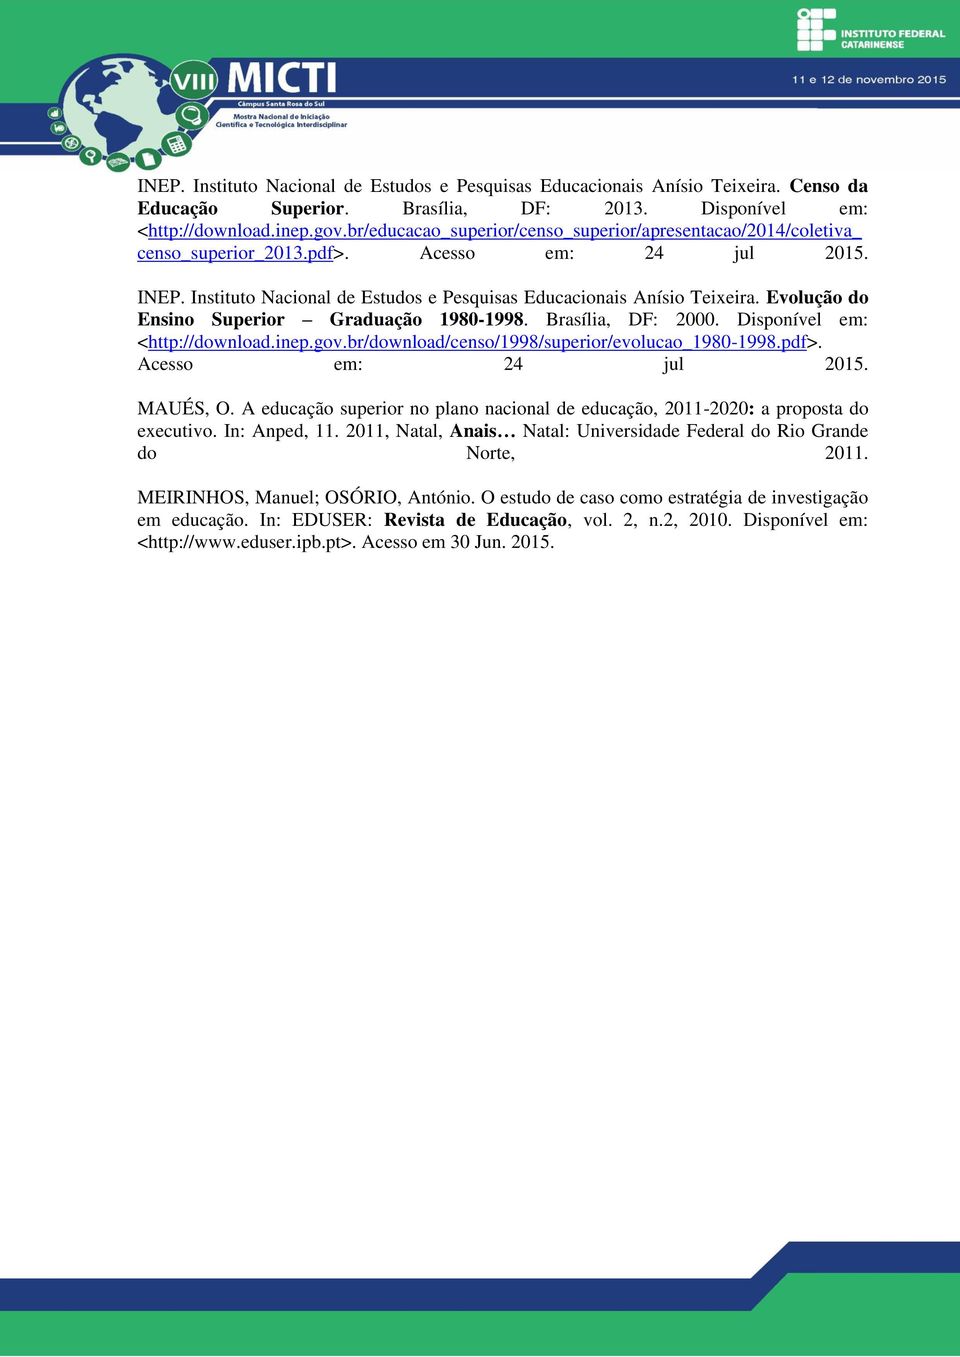 Evolução do Ensino Superior Graduação 1980-1998. Brasília, DF: 2000. Disponível em: <http://download.inep.gov.br/download/censo/1998/superior/evolucao_1980-1998.pdf>. Acesso em: 24 jul 2015. MAUÉS, O.